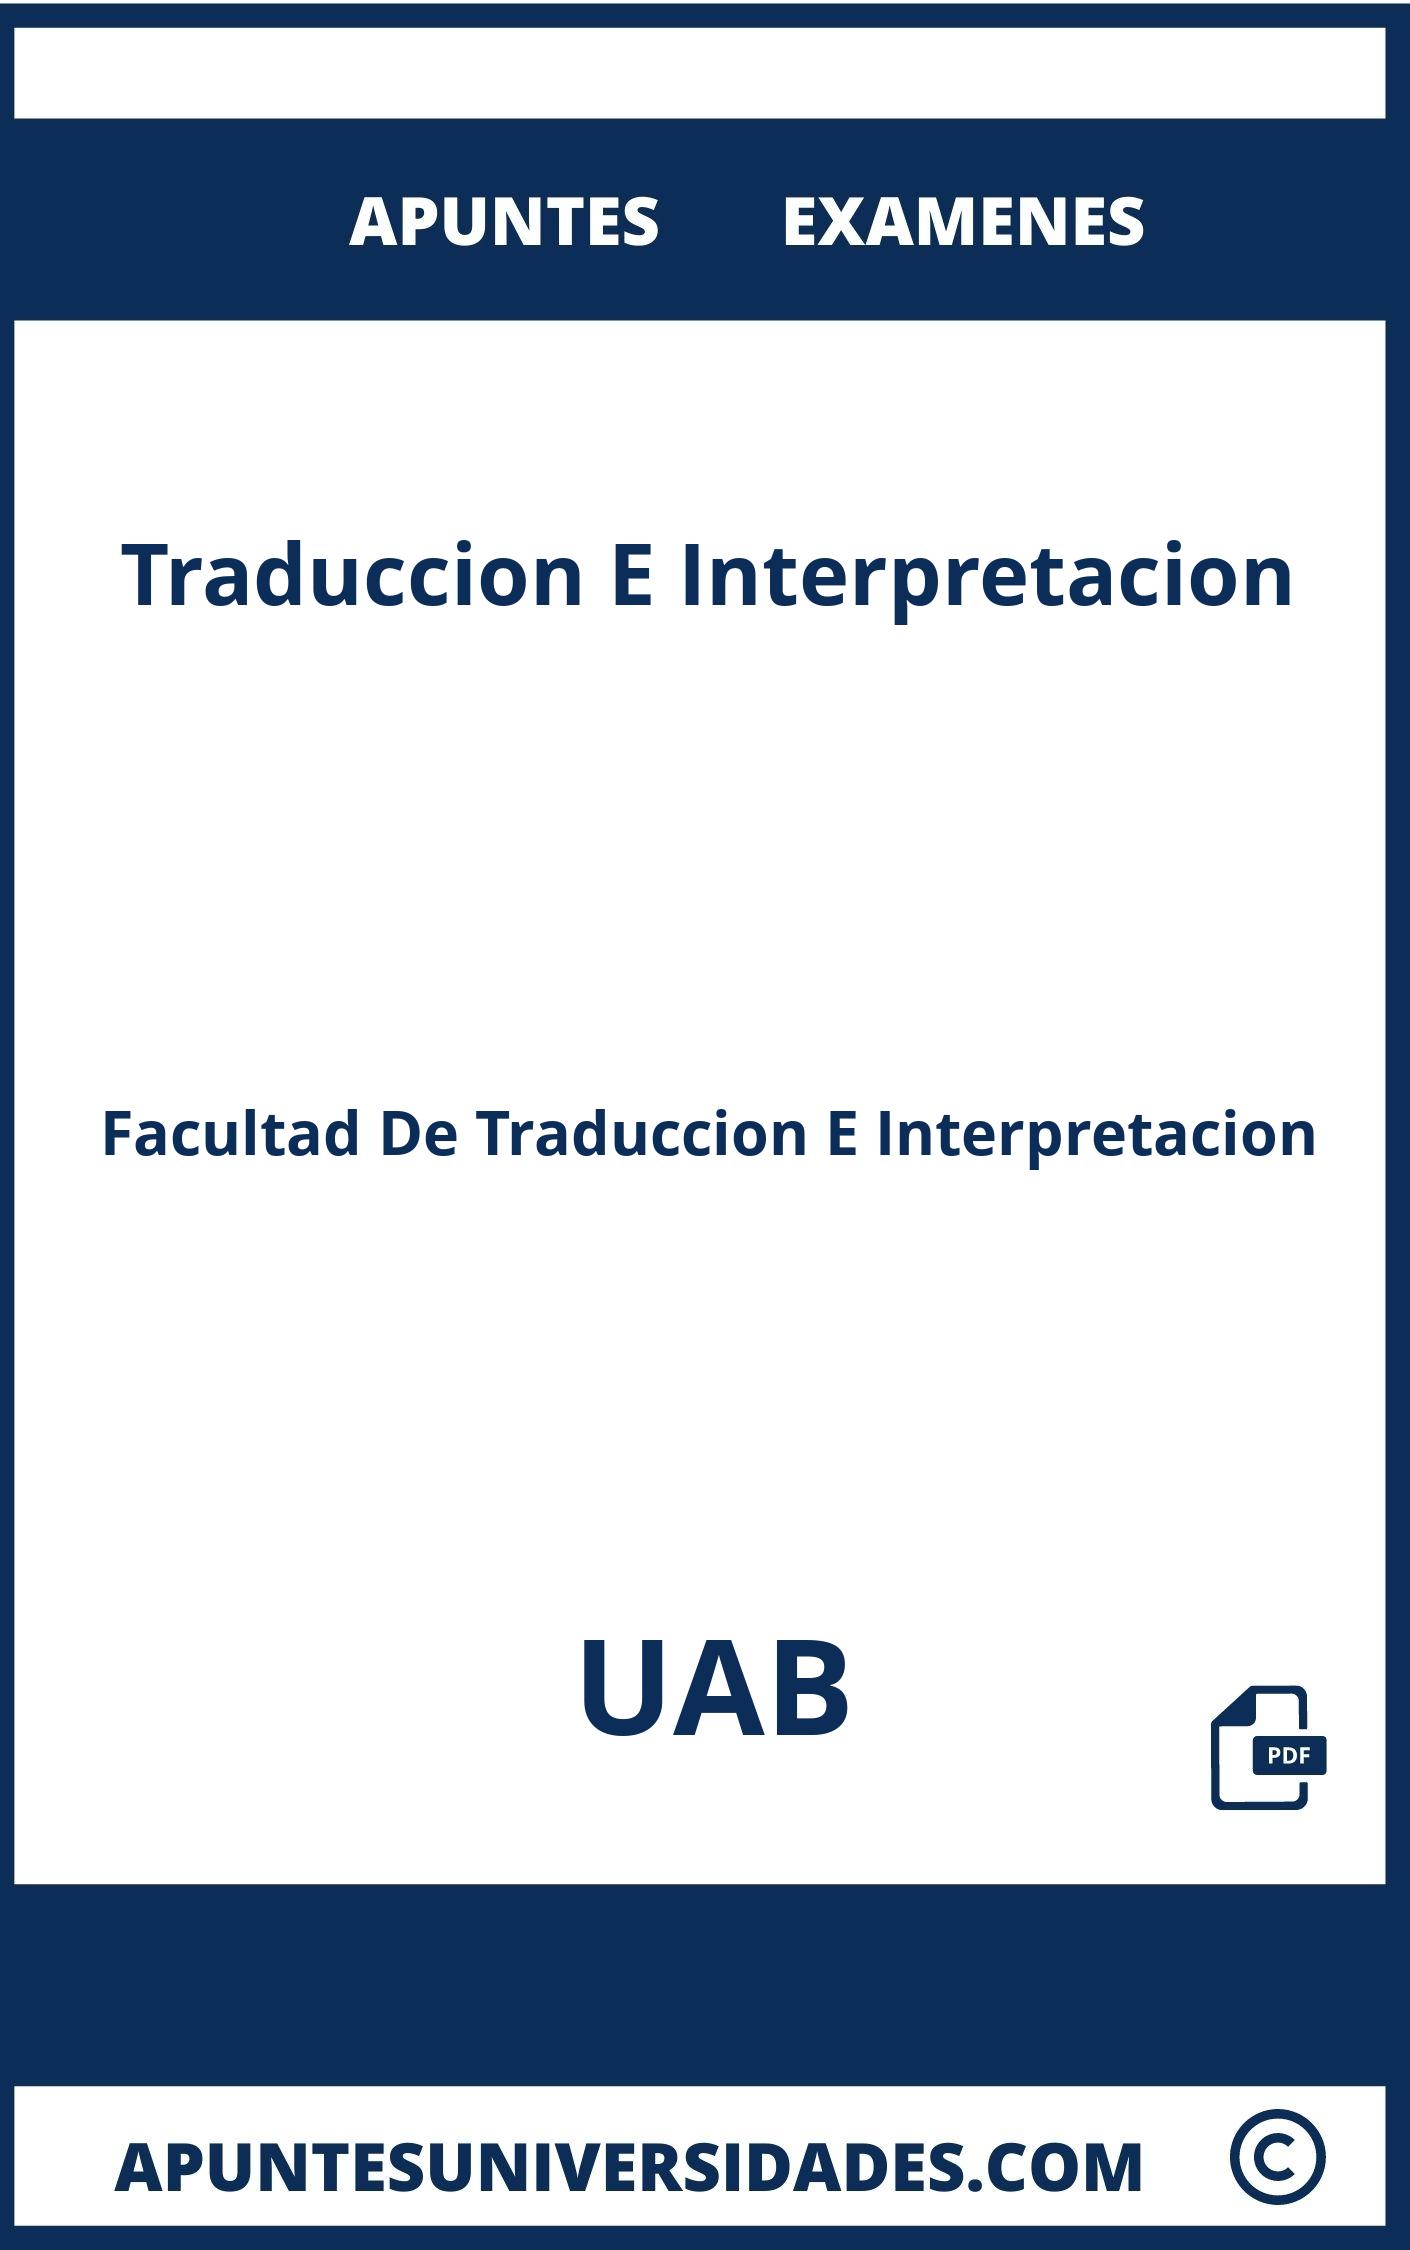 Traduccion E Interpretacion UAB Apuntes Examenes